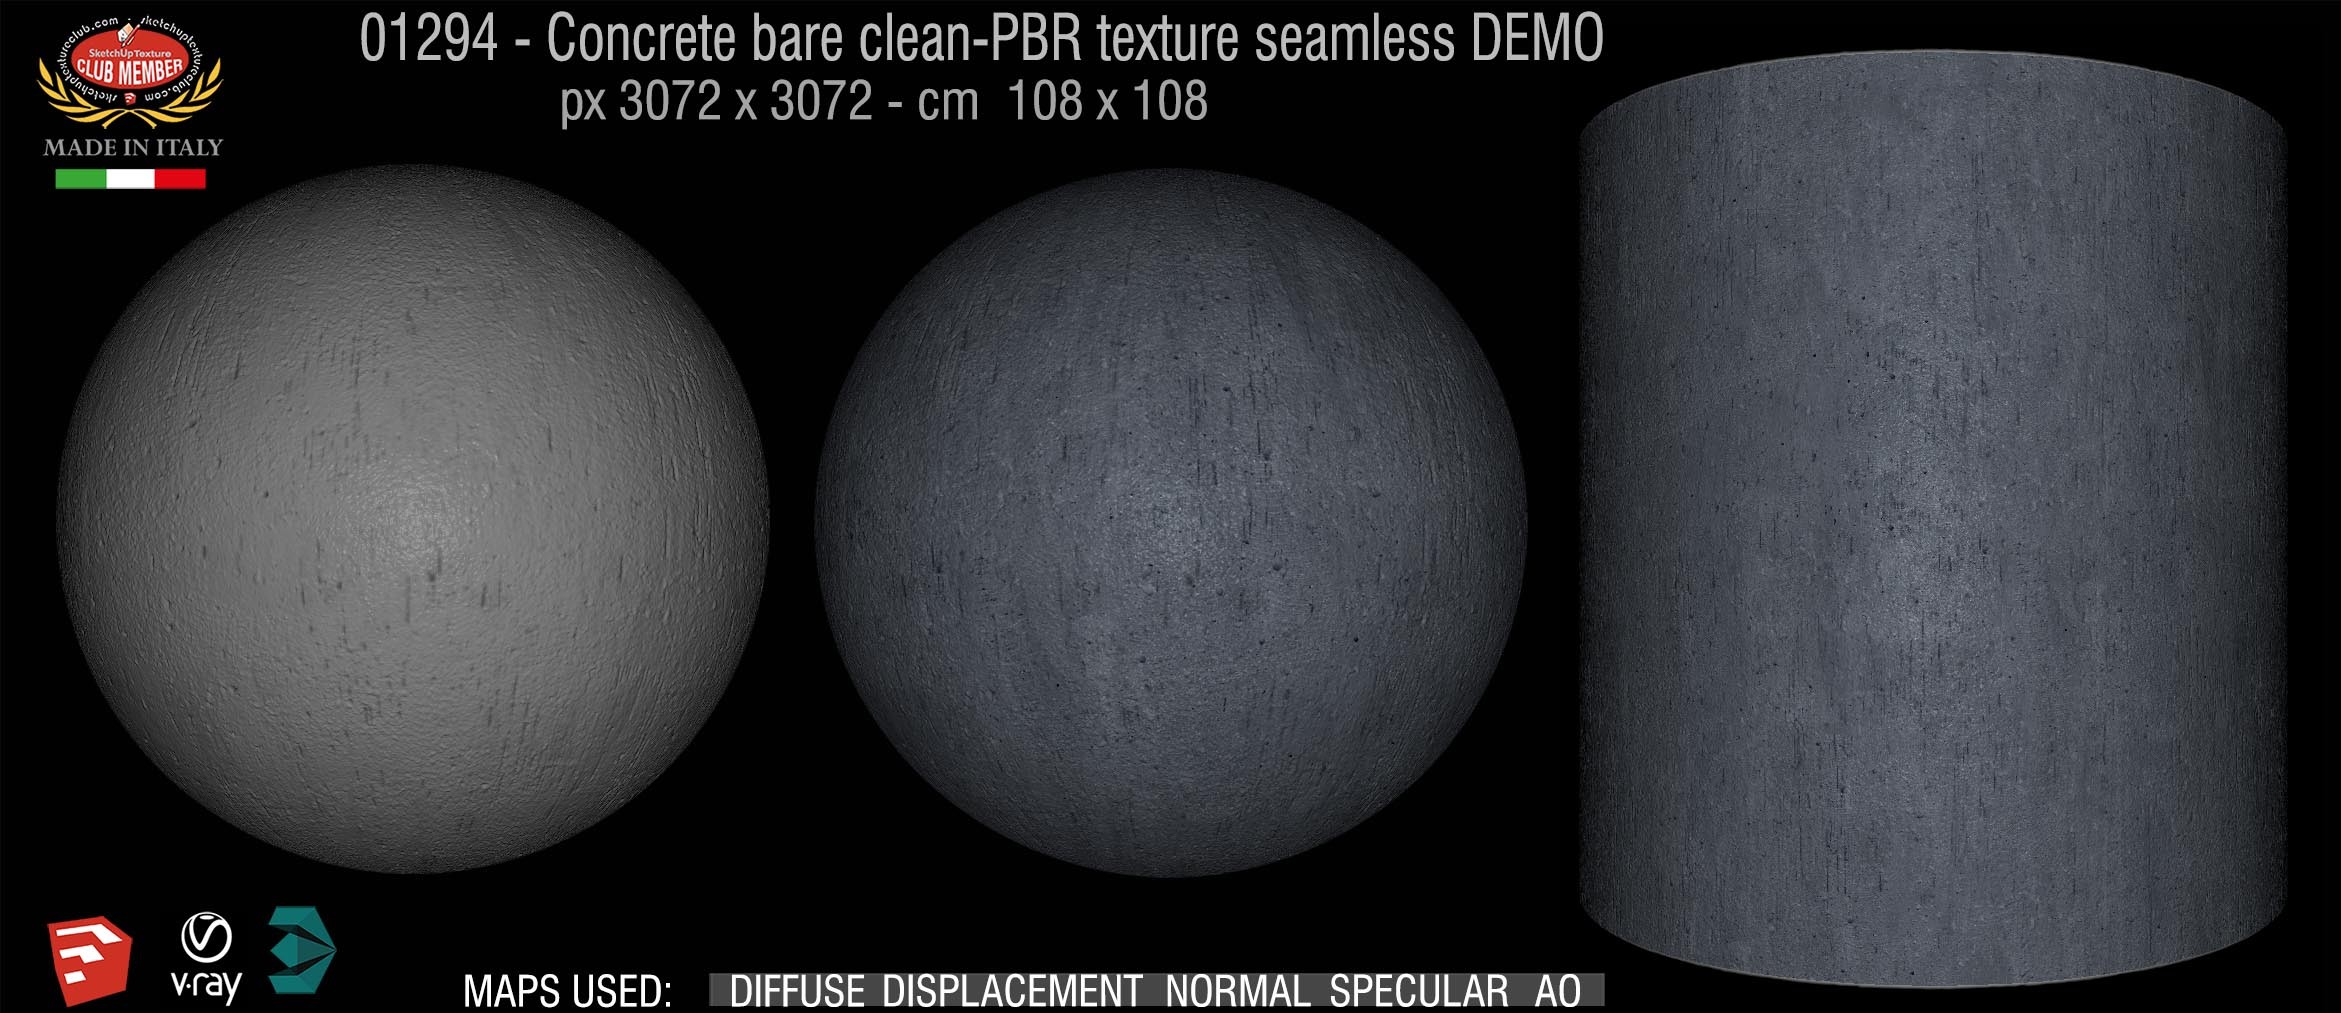 01294 Concrete bare clean-PBR texture seamless DEMO